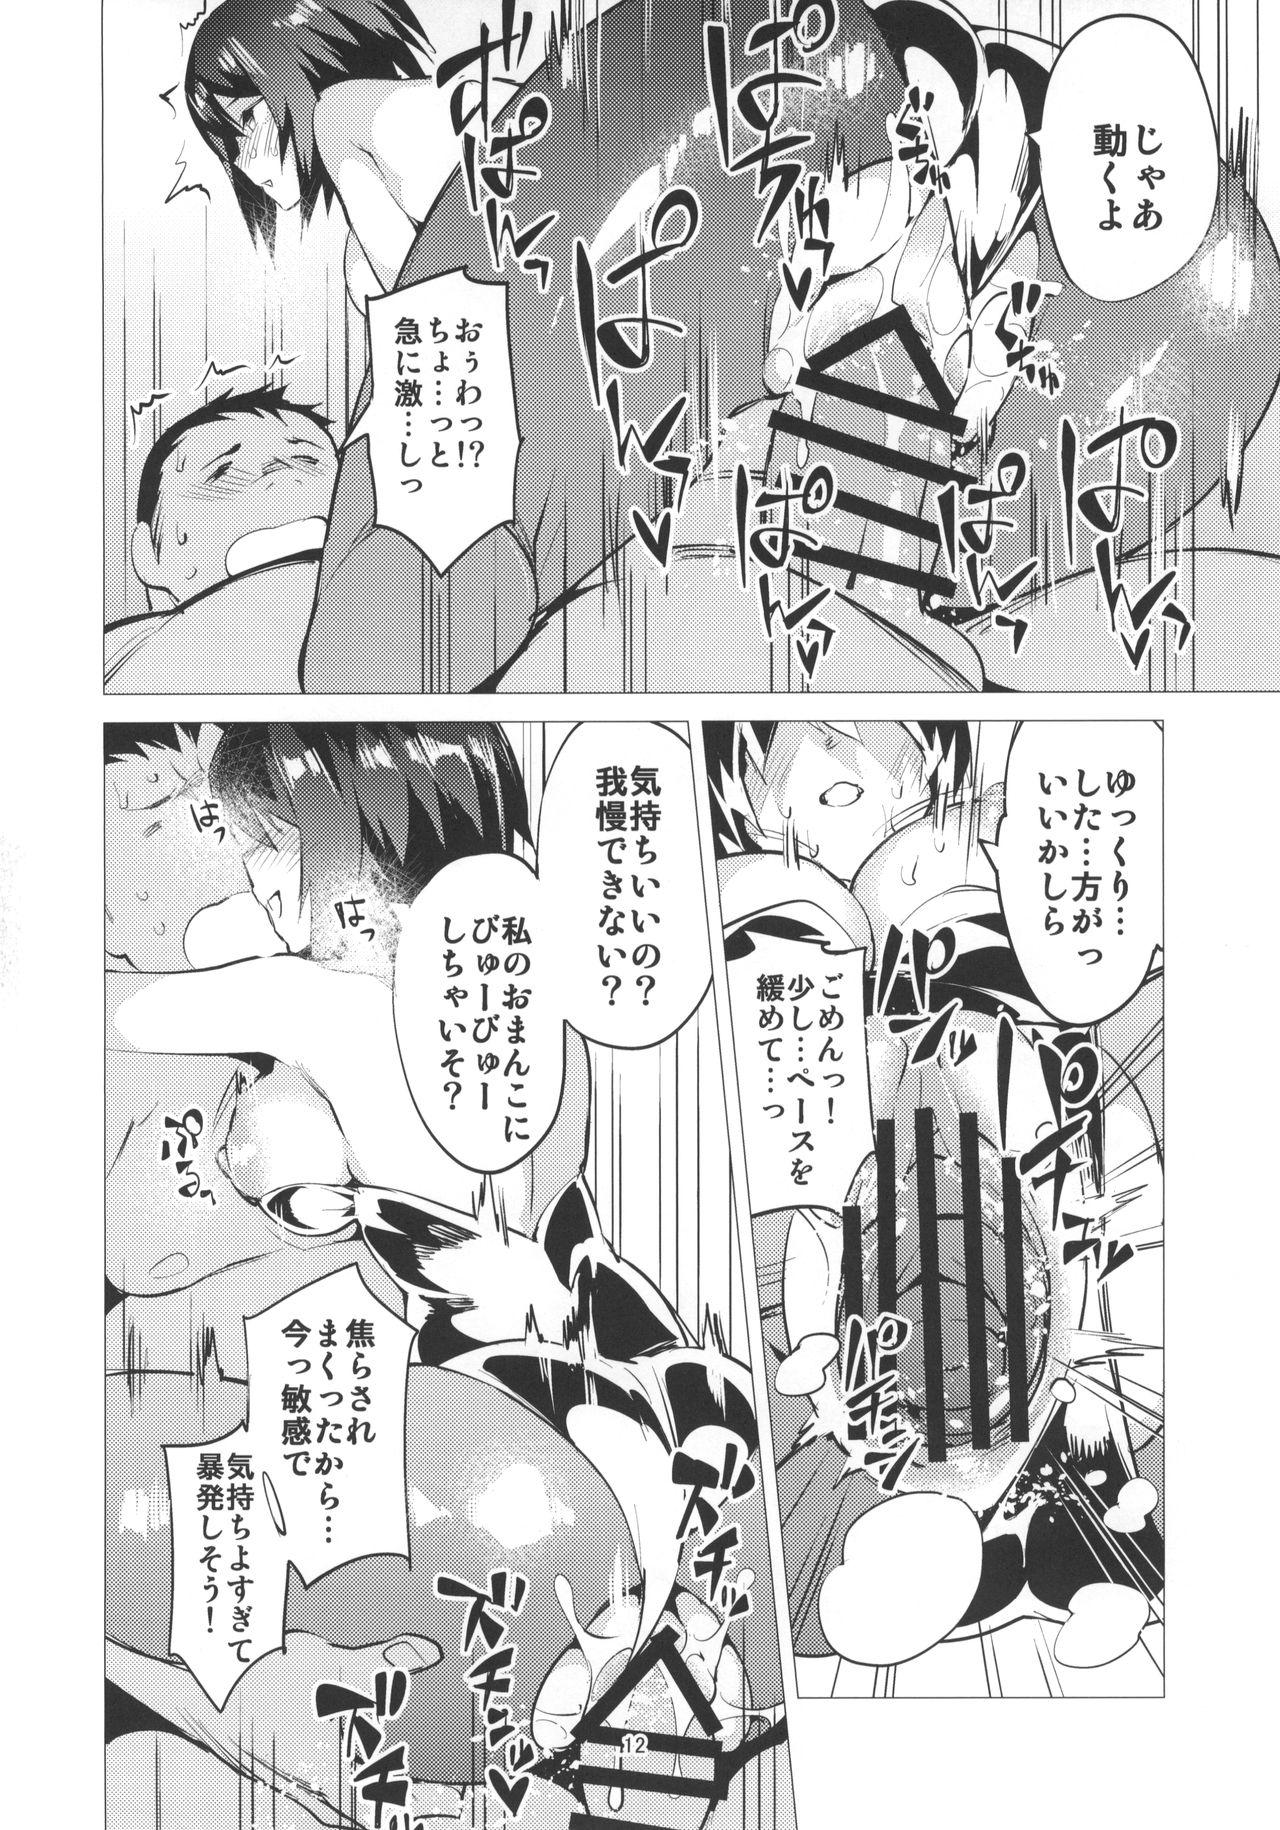 Pareja PANZERSTIC BEAST to Koshidzukai no Tami - Girls und panzer Teens - Page 11